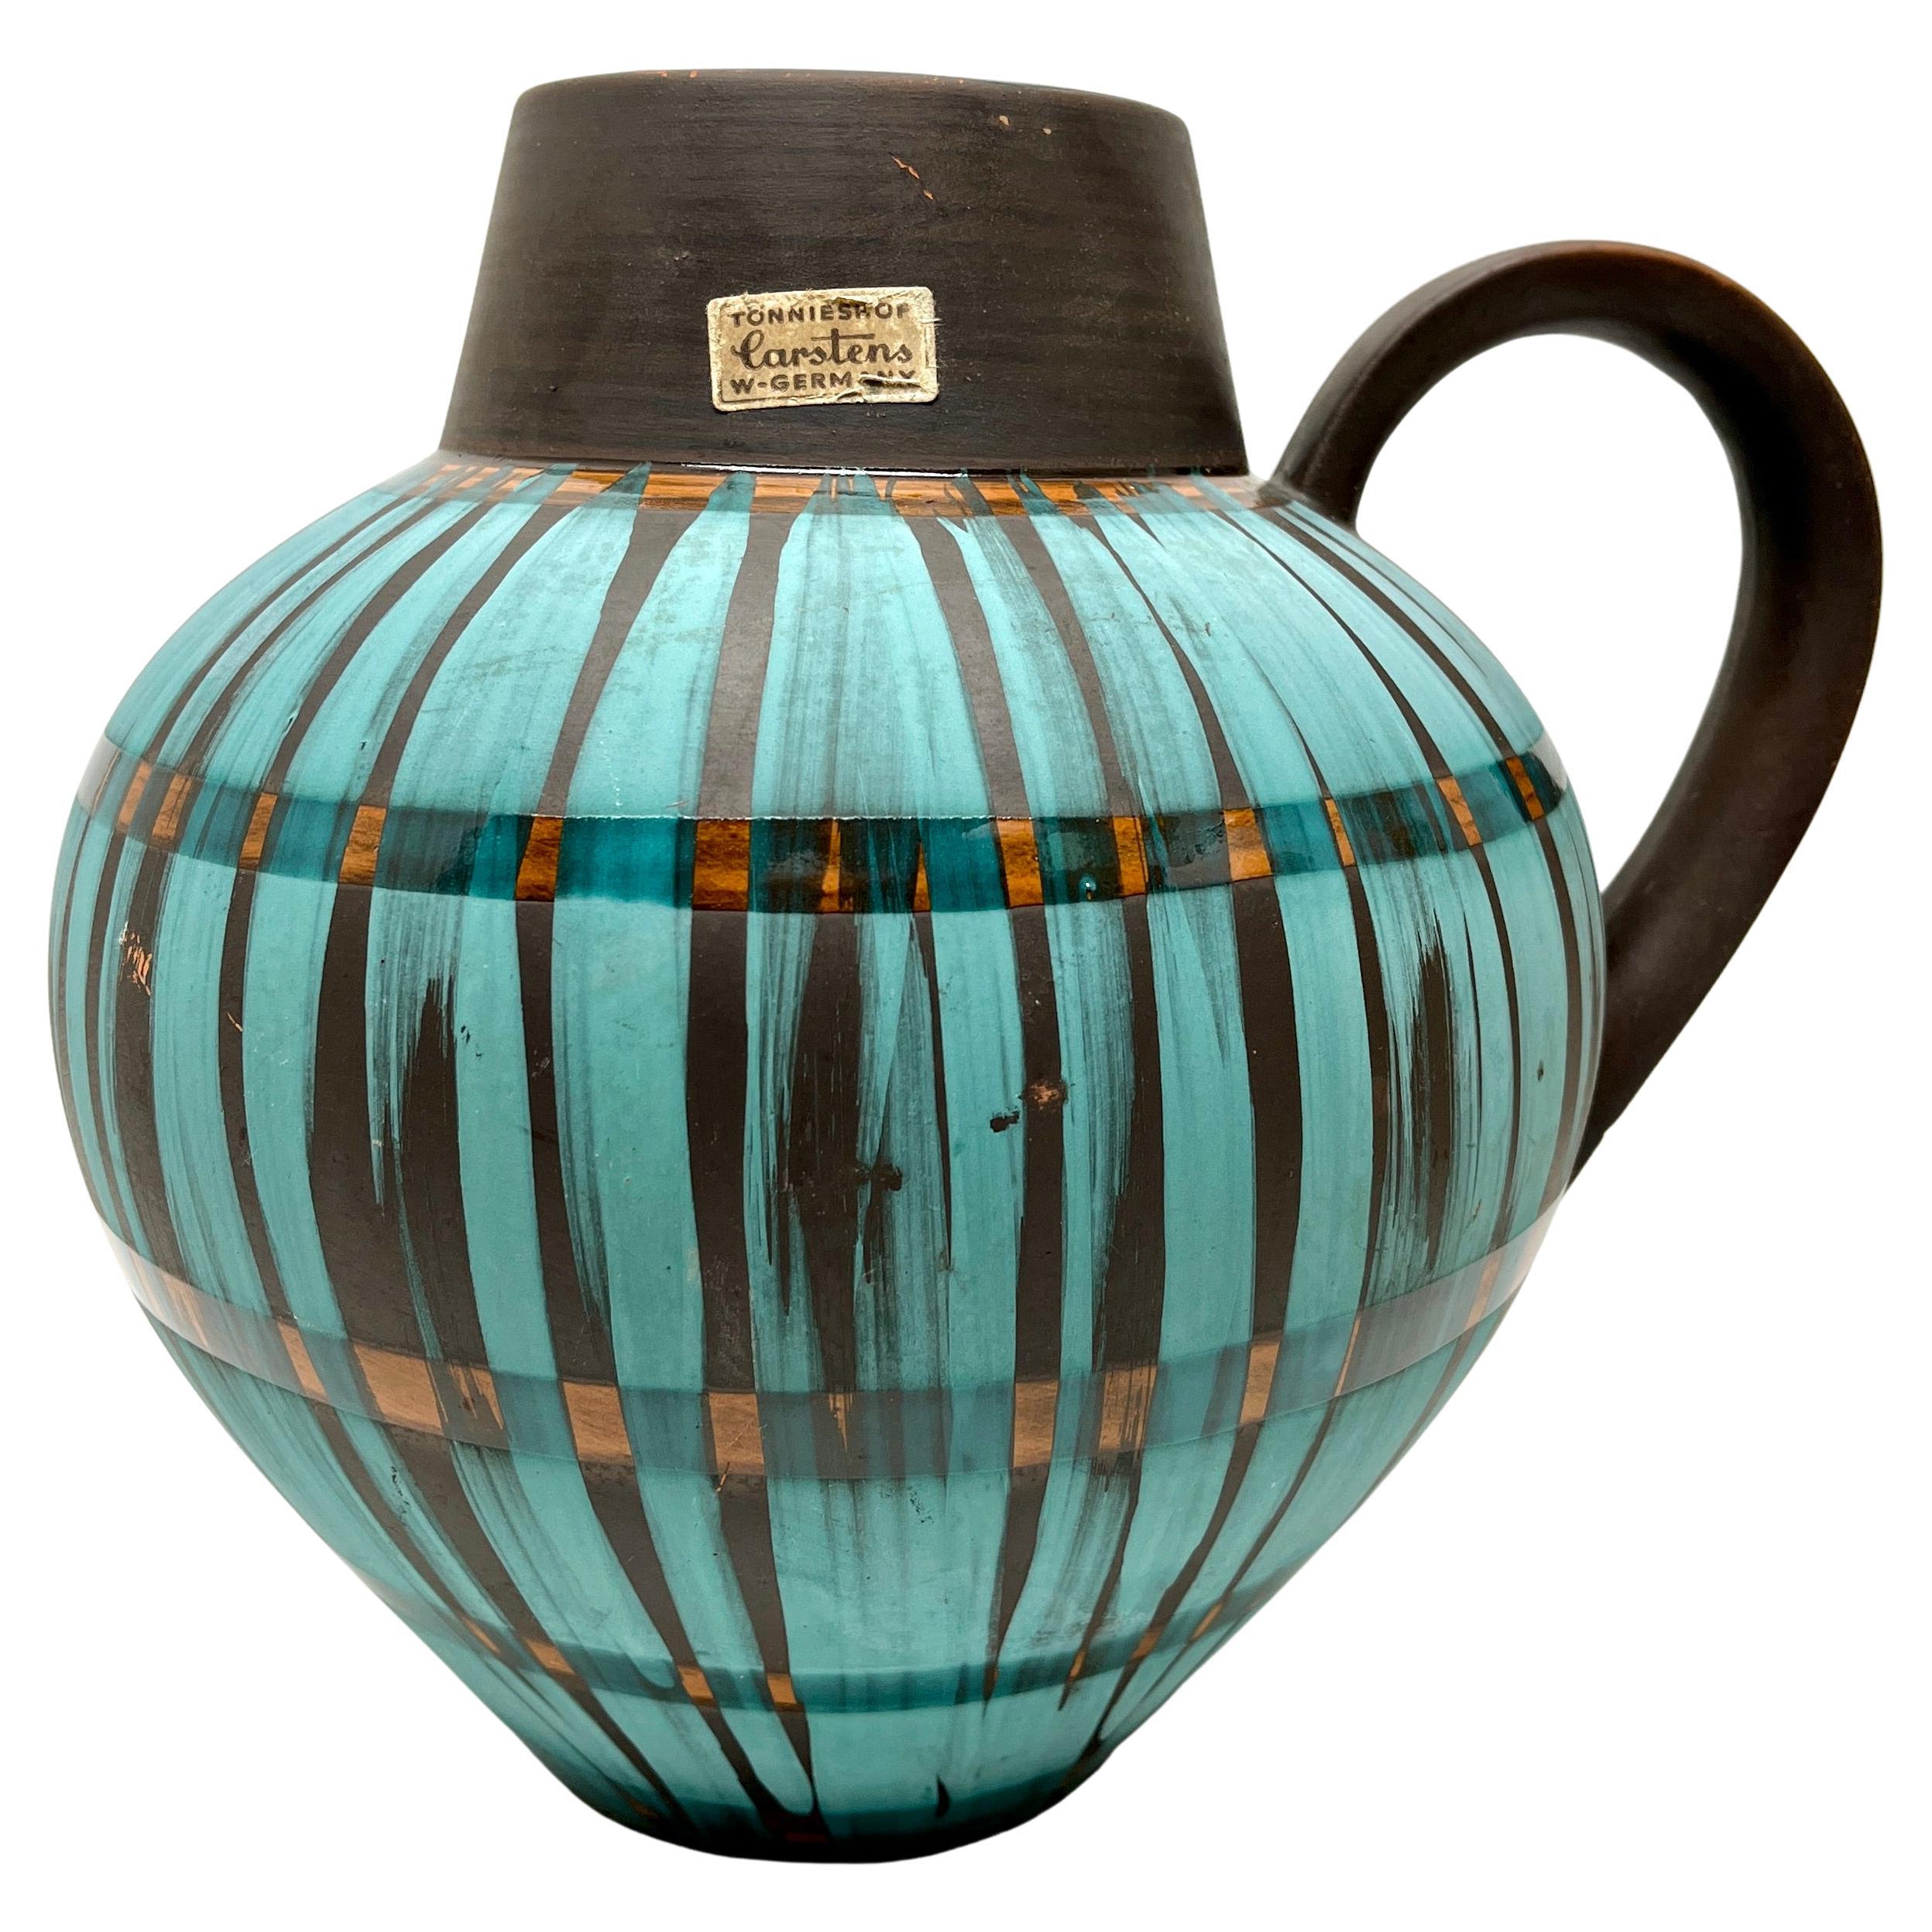 Carstens Vintage, Keramikvase mit Henkel, markiert W Germany 698-23, von Carstens